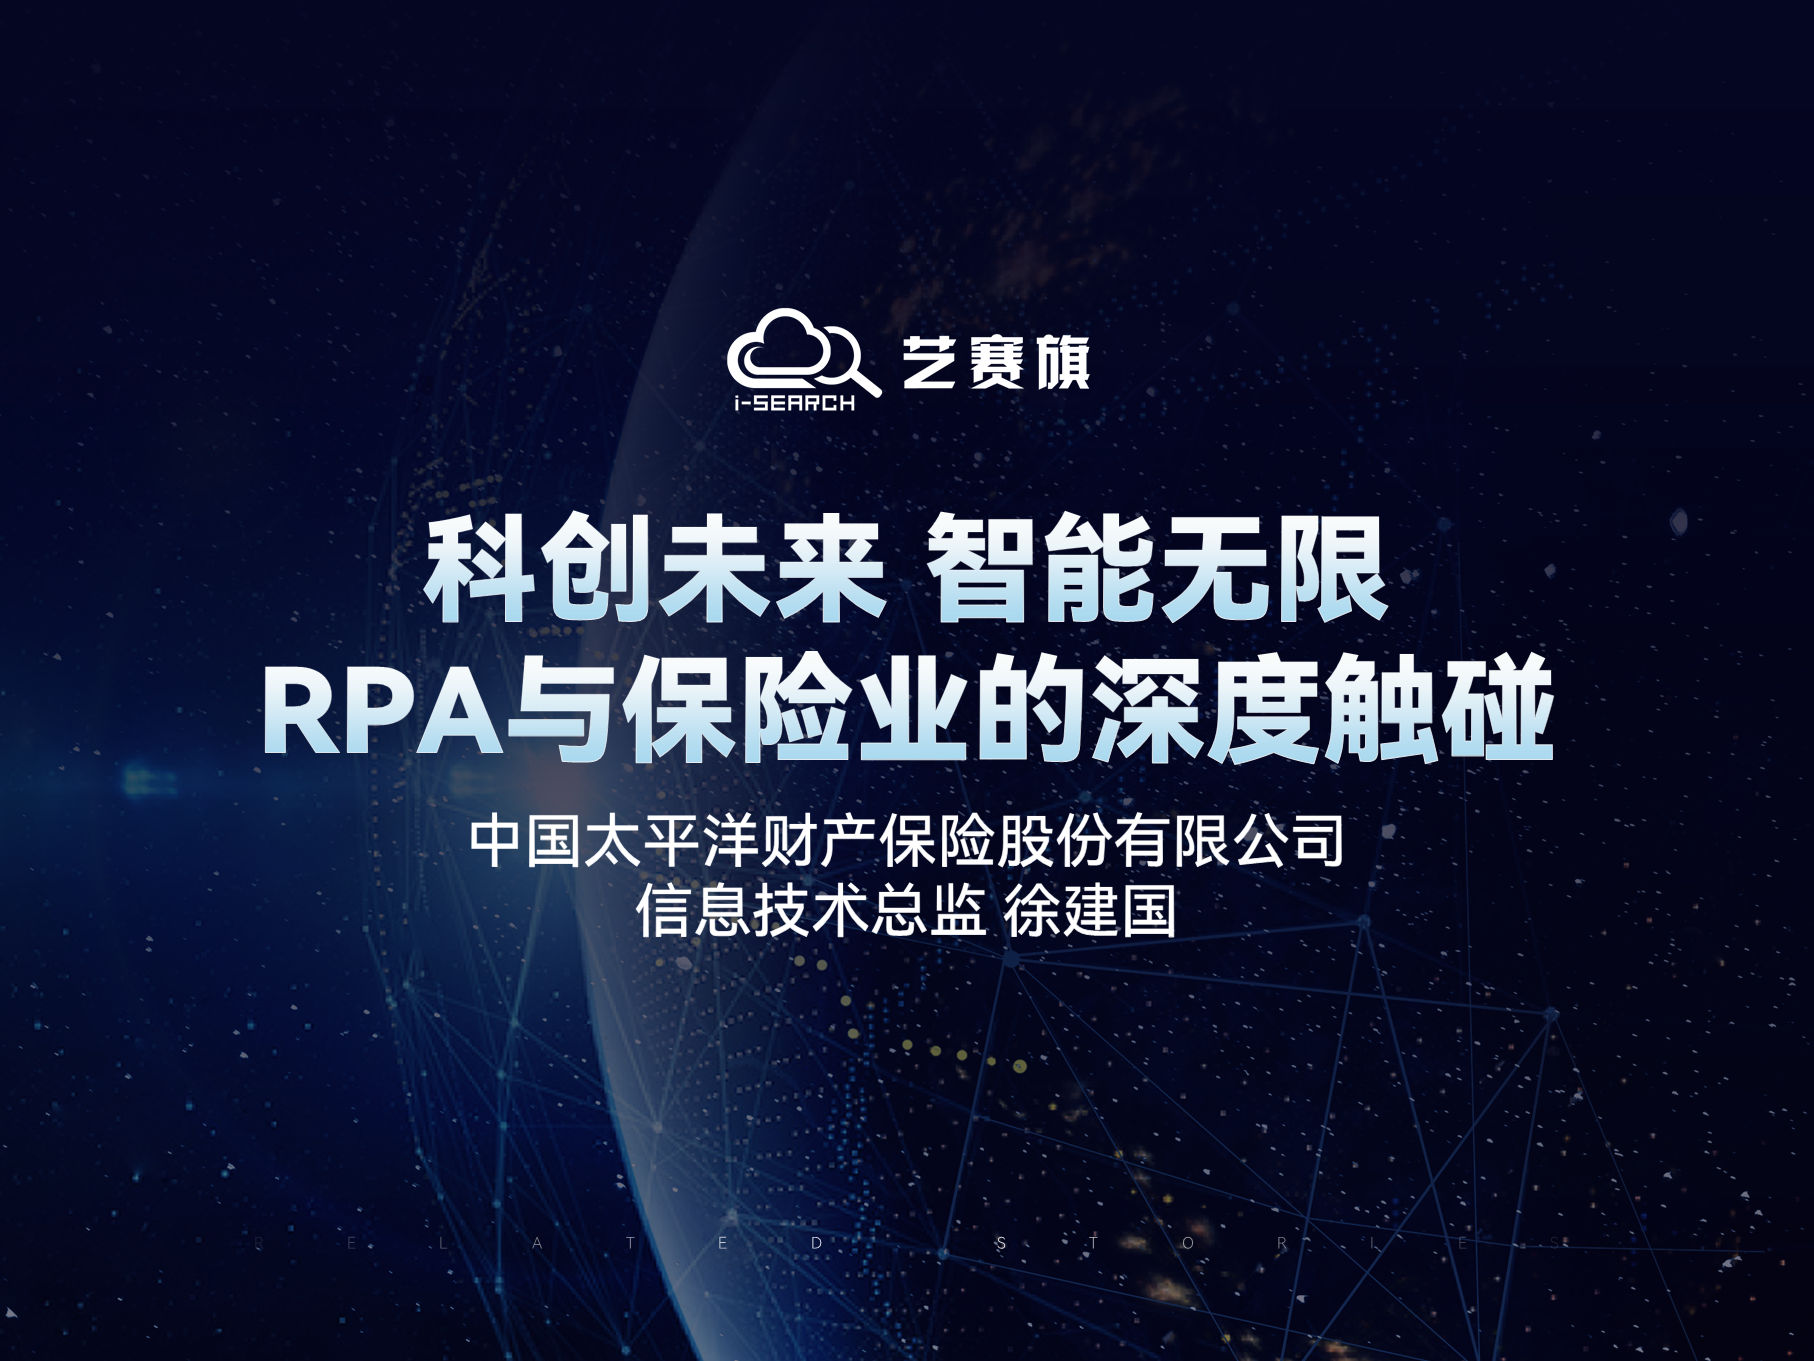 科创未来 智能无限——RPA与保险业的深度触碰 | 中国太平洋财产保险股份有限